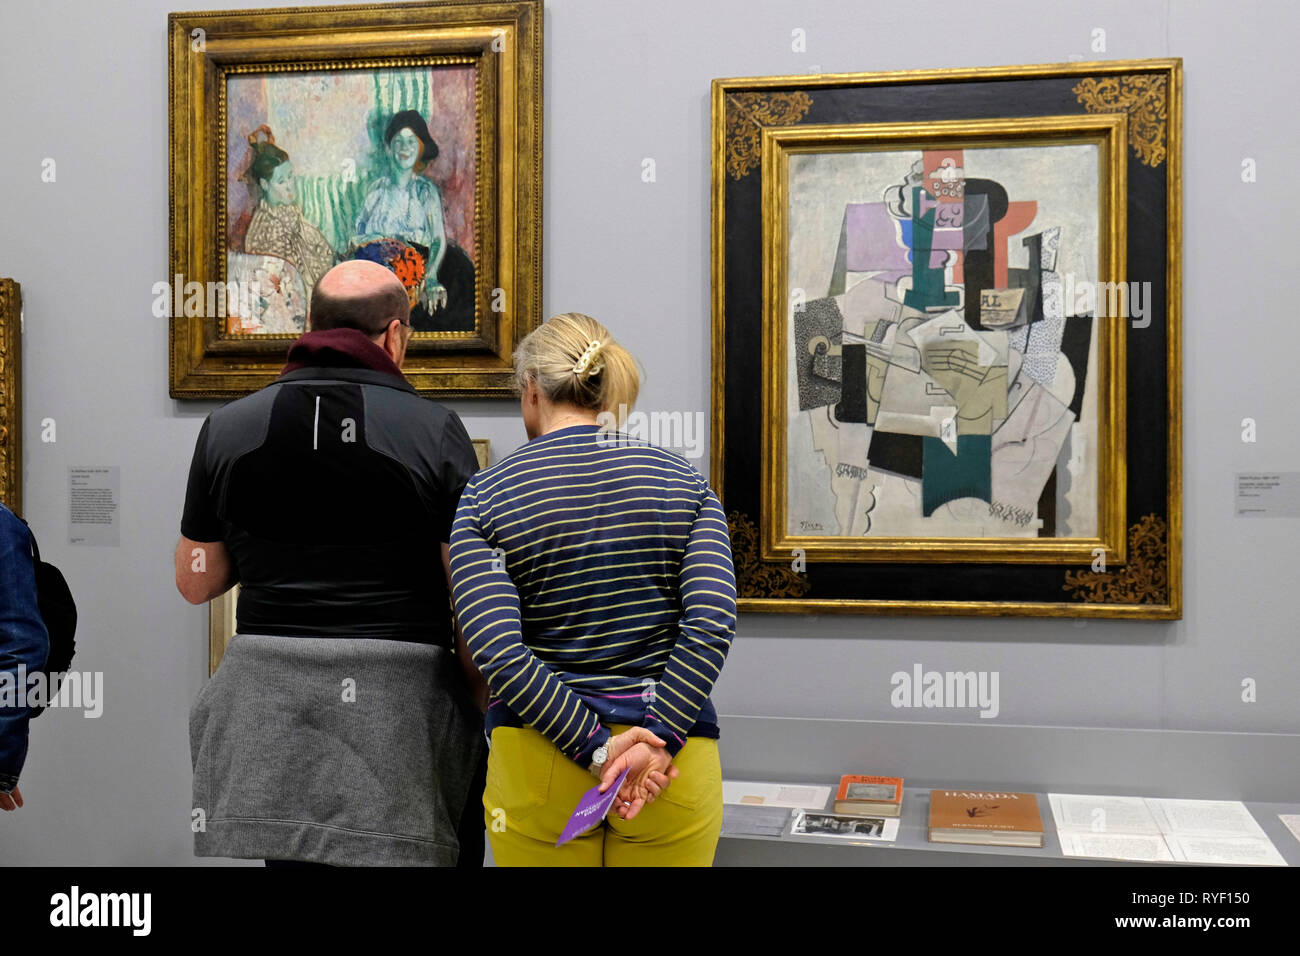 Les visiteurs de la Tate St Ives, Cornwall, UK, tableaux dont "Compotier, violon, Boutelle" de Picasso (cadre noir). Banque D'Images